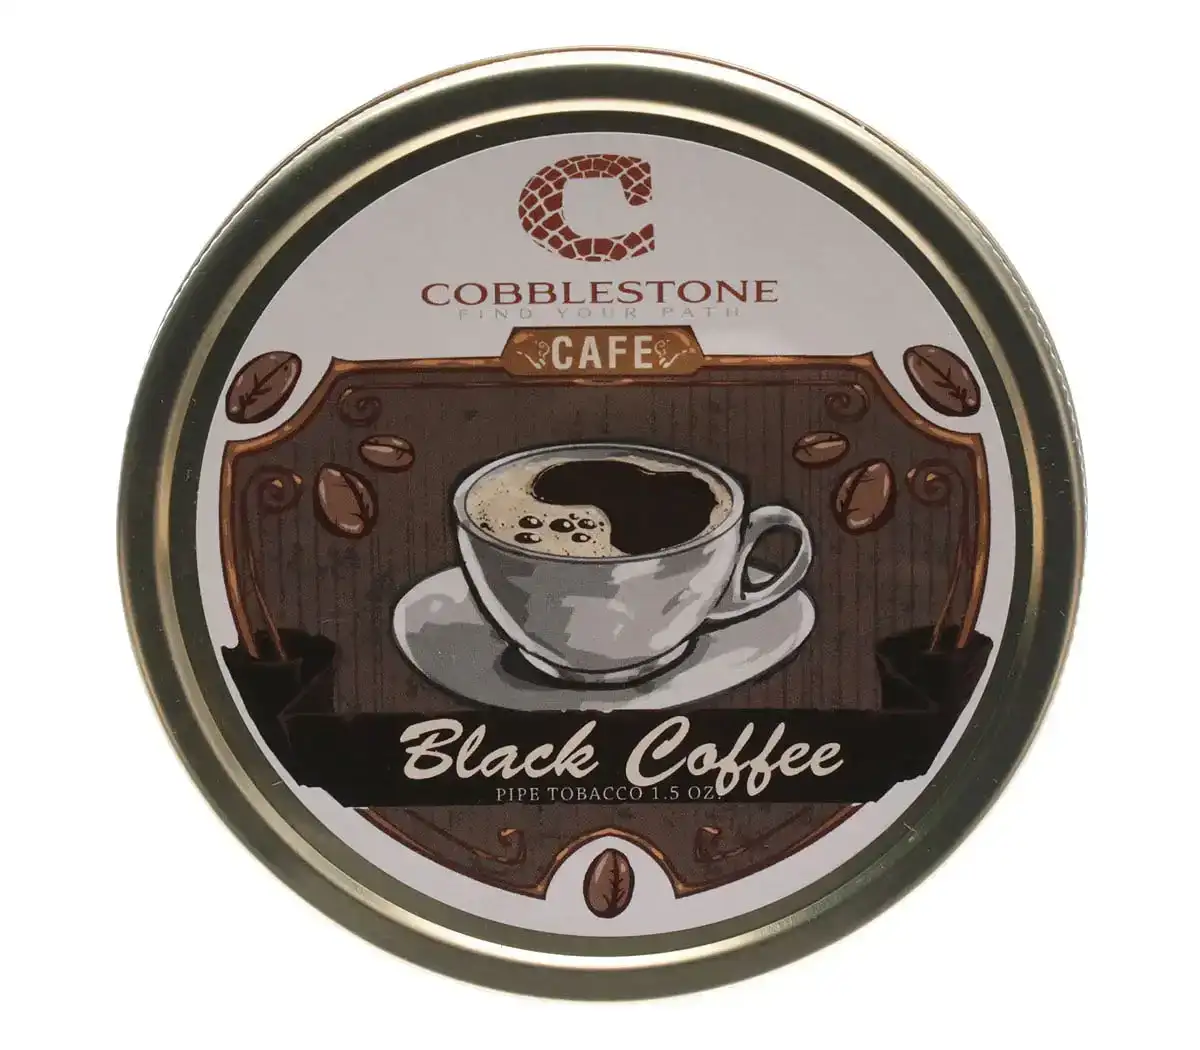 Cobblestone Café Black Coffee Pipe Tobacco